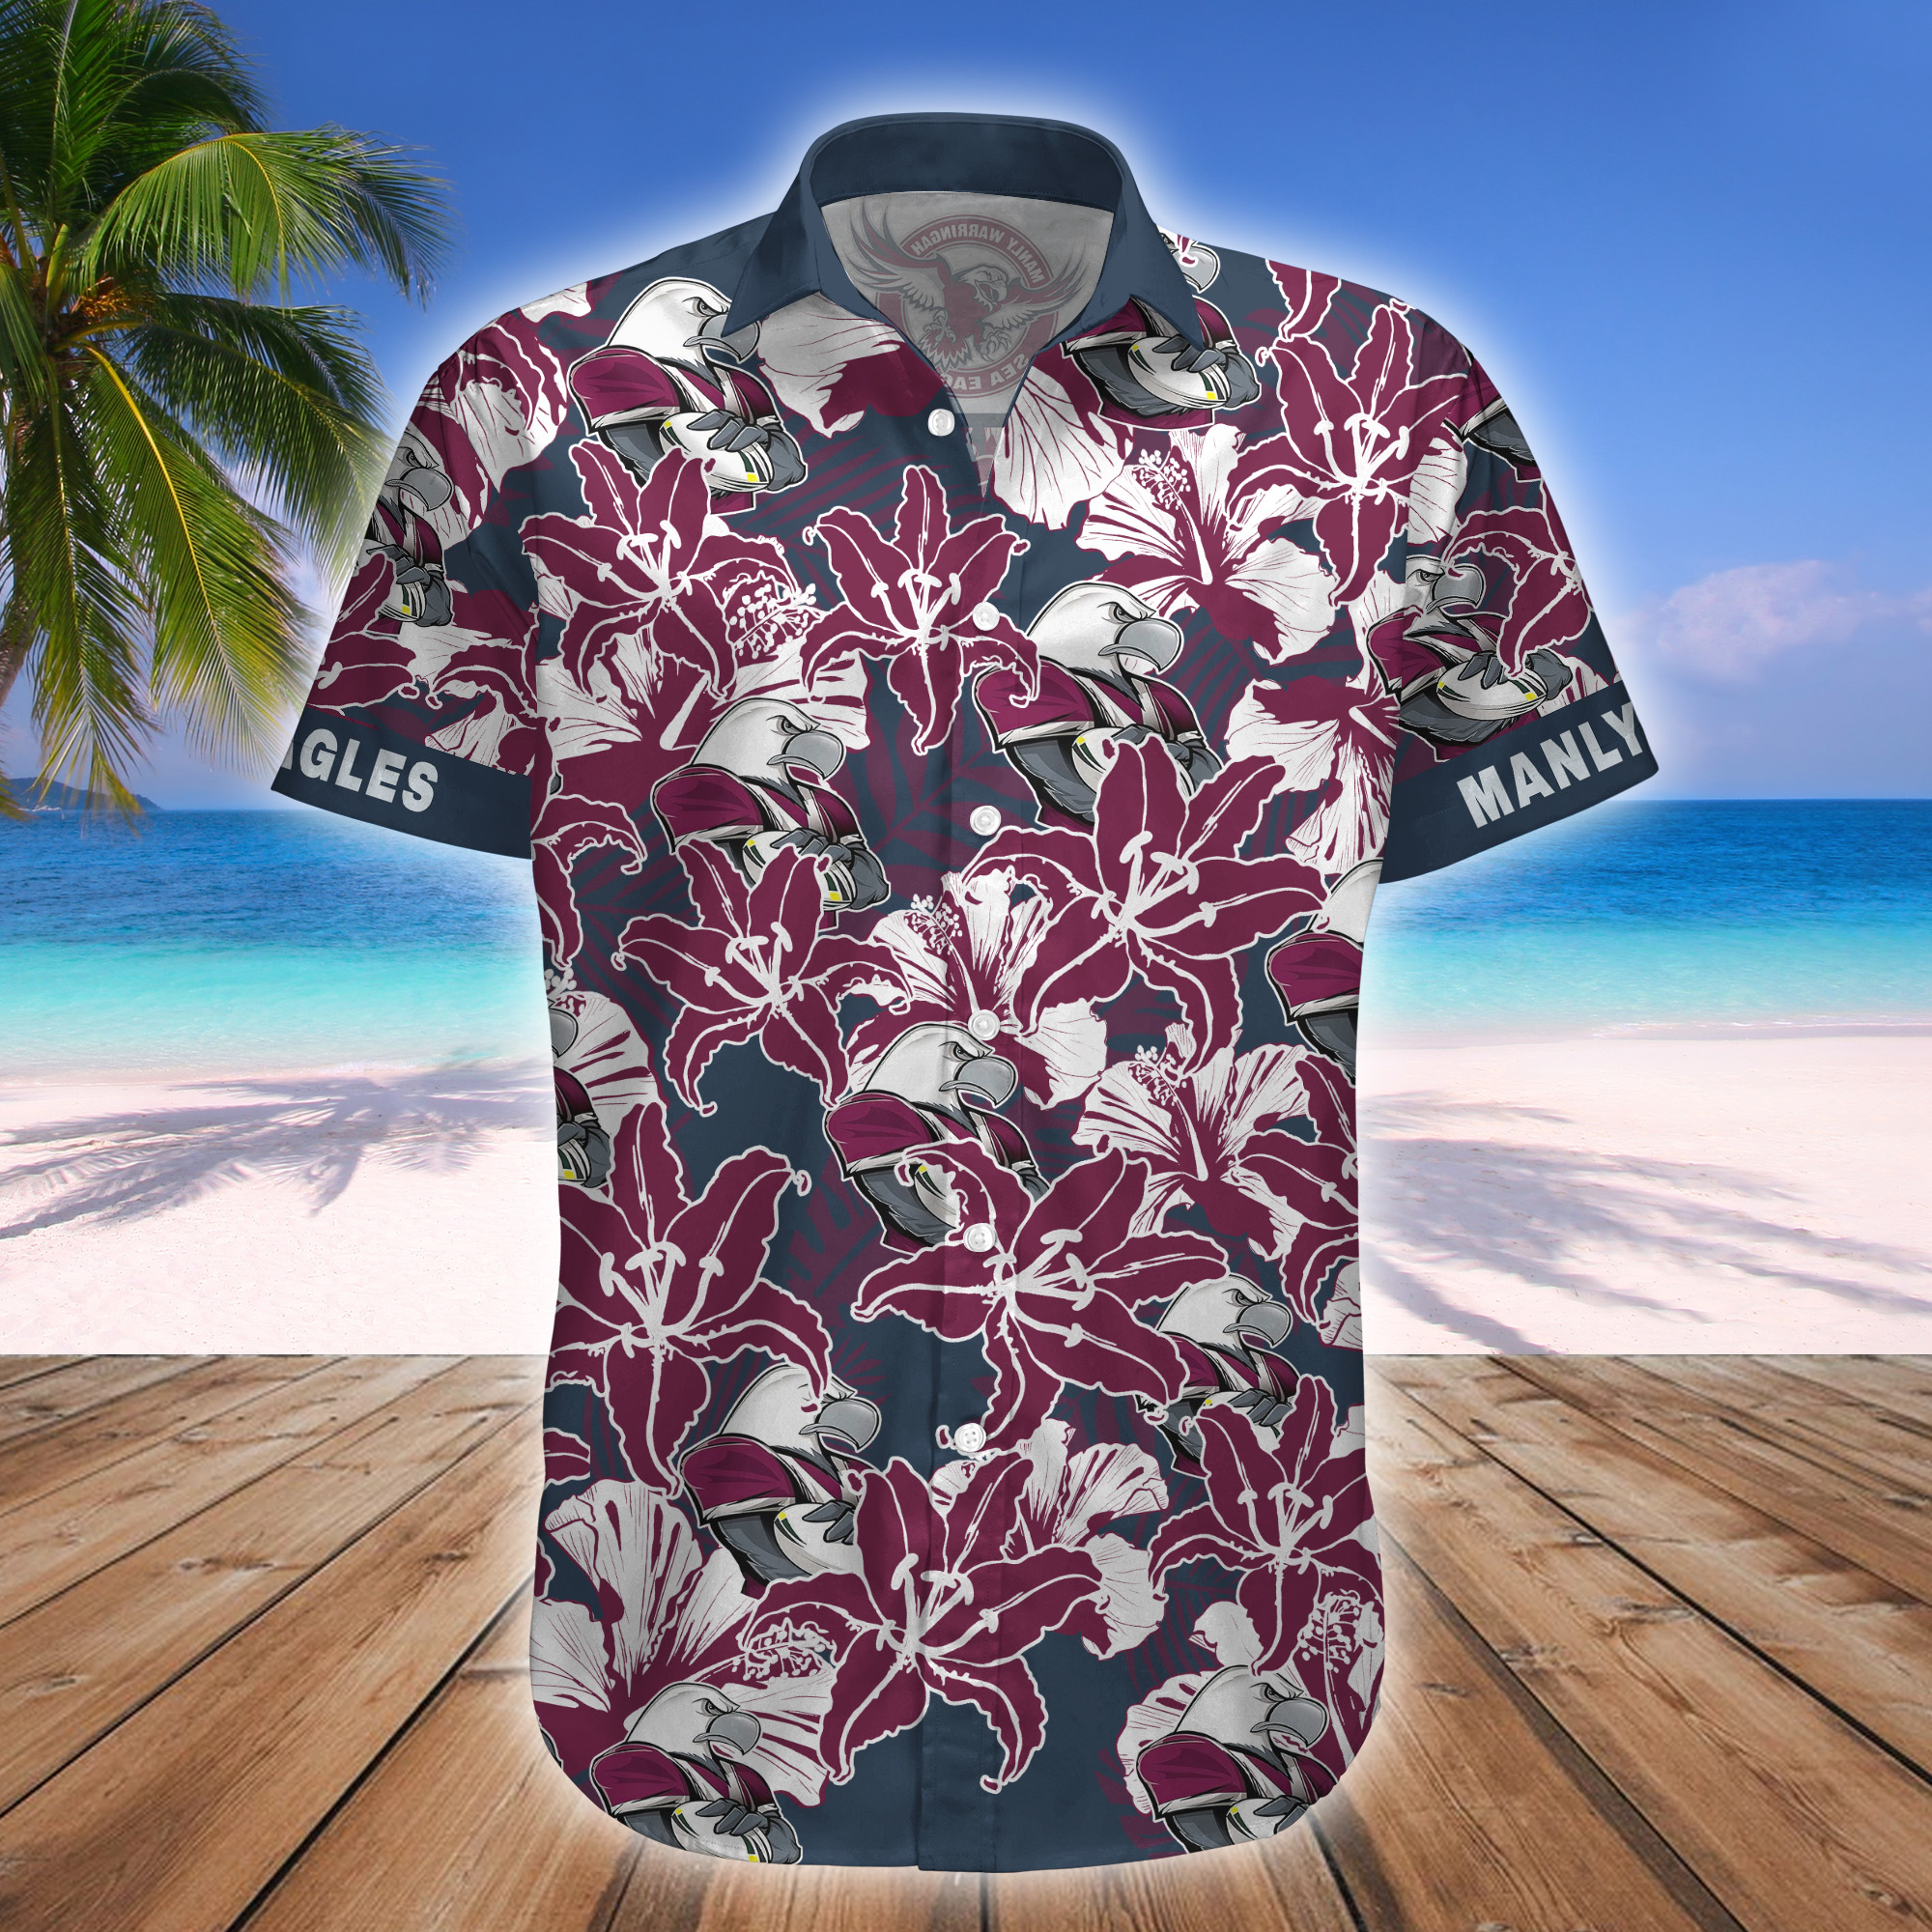 Manly Sea Eagles NRL Mascot Hawaiian Shirt